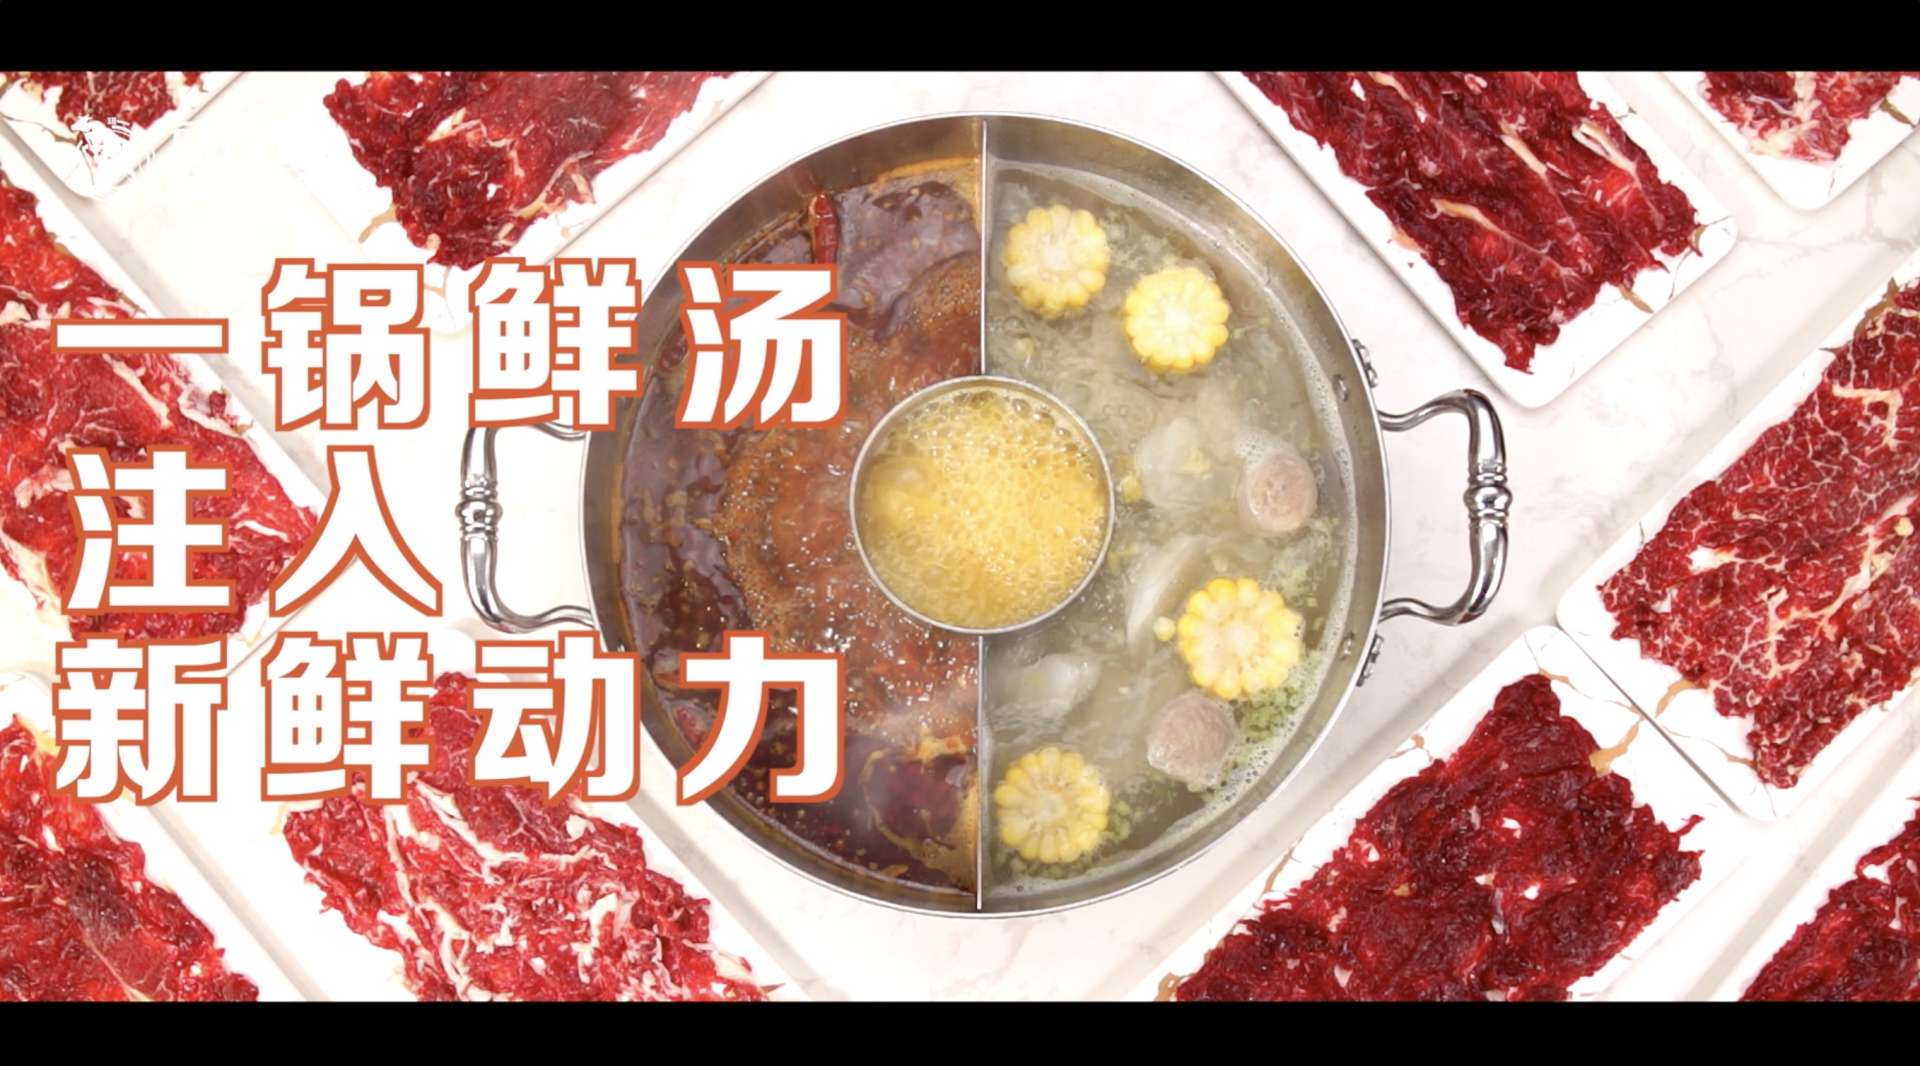 美食视频——郑州豆捞坊产品视频